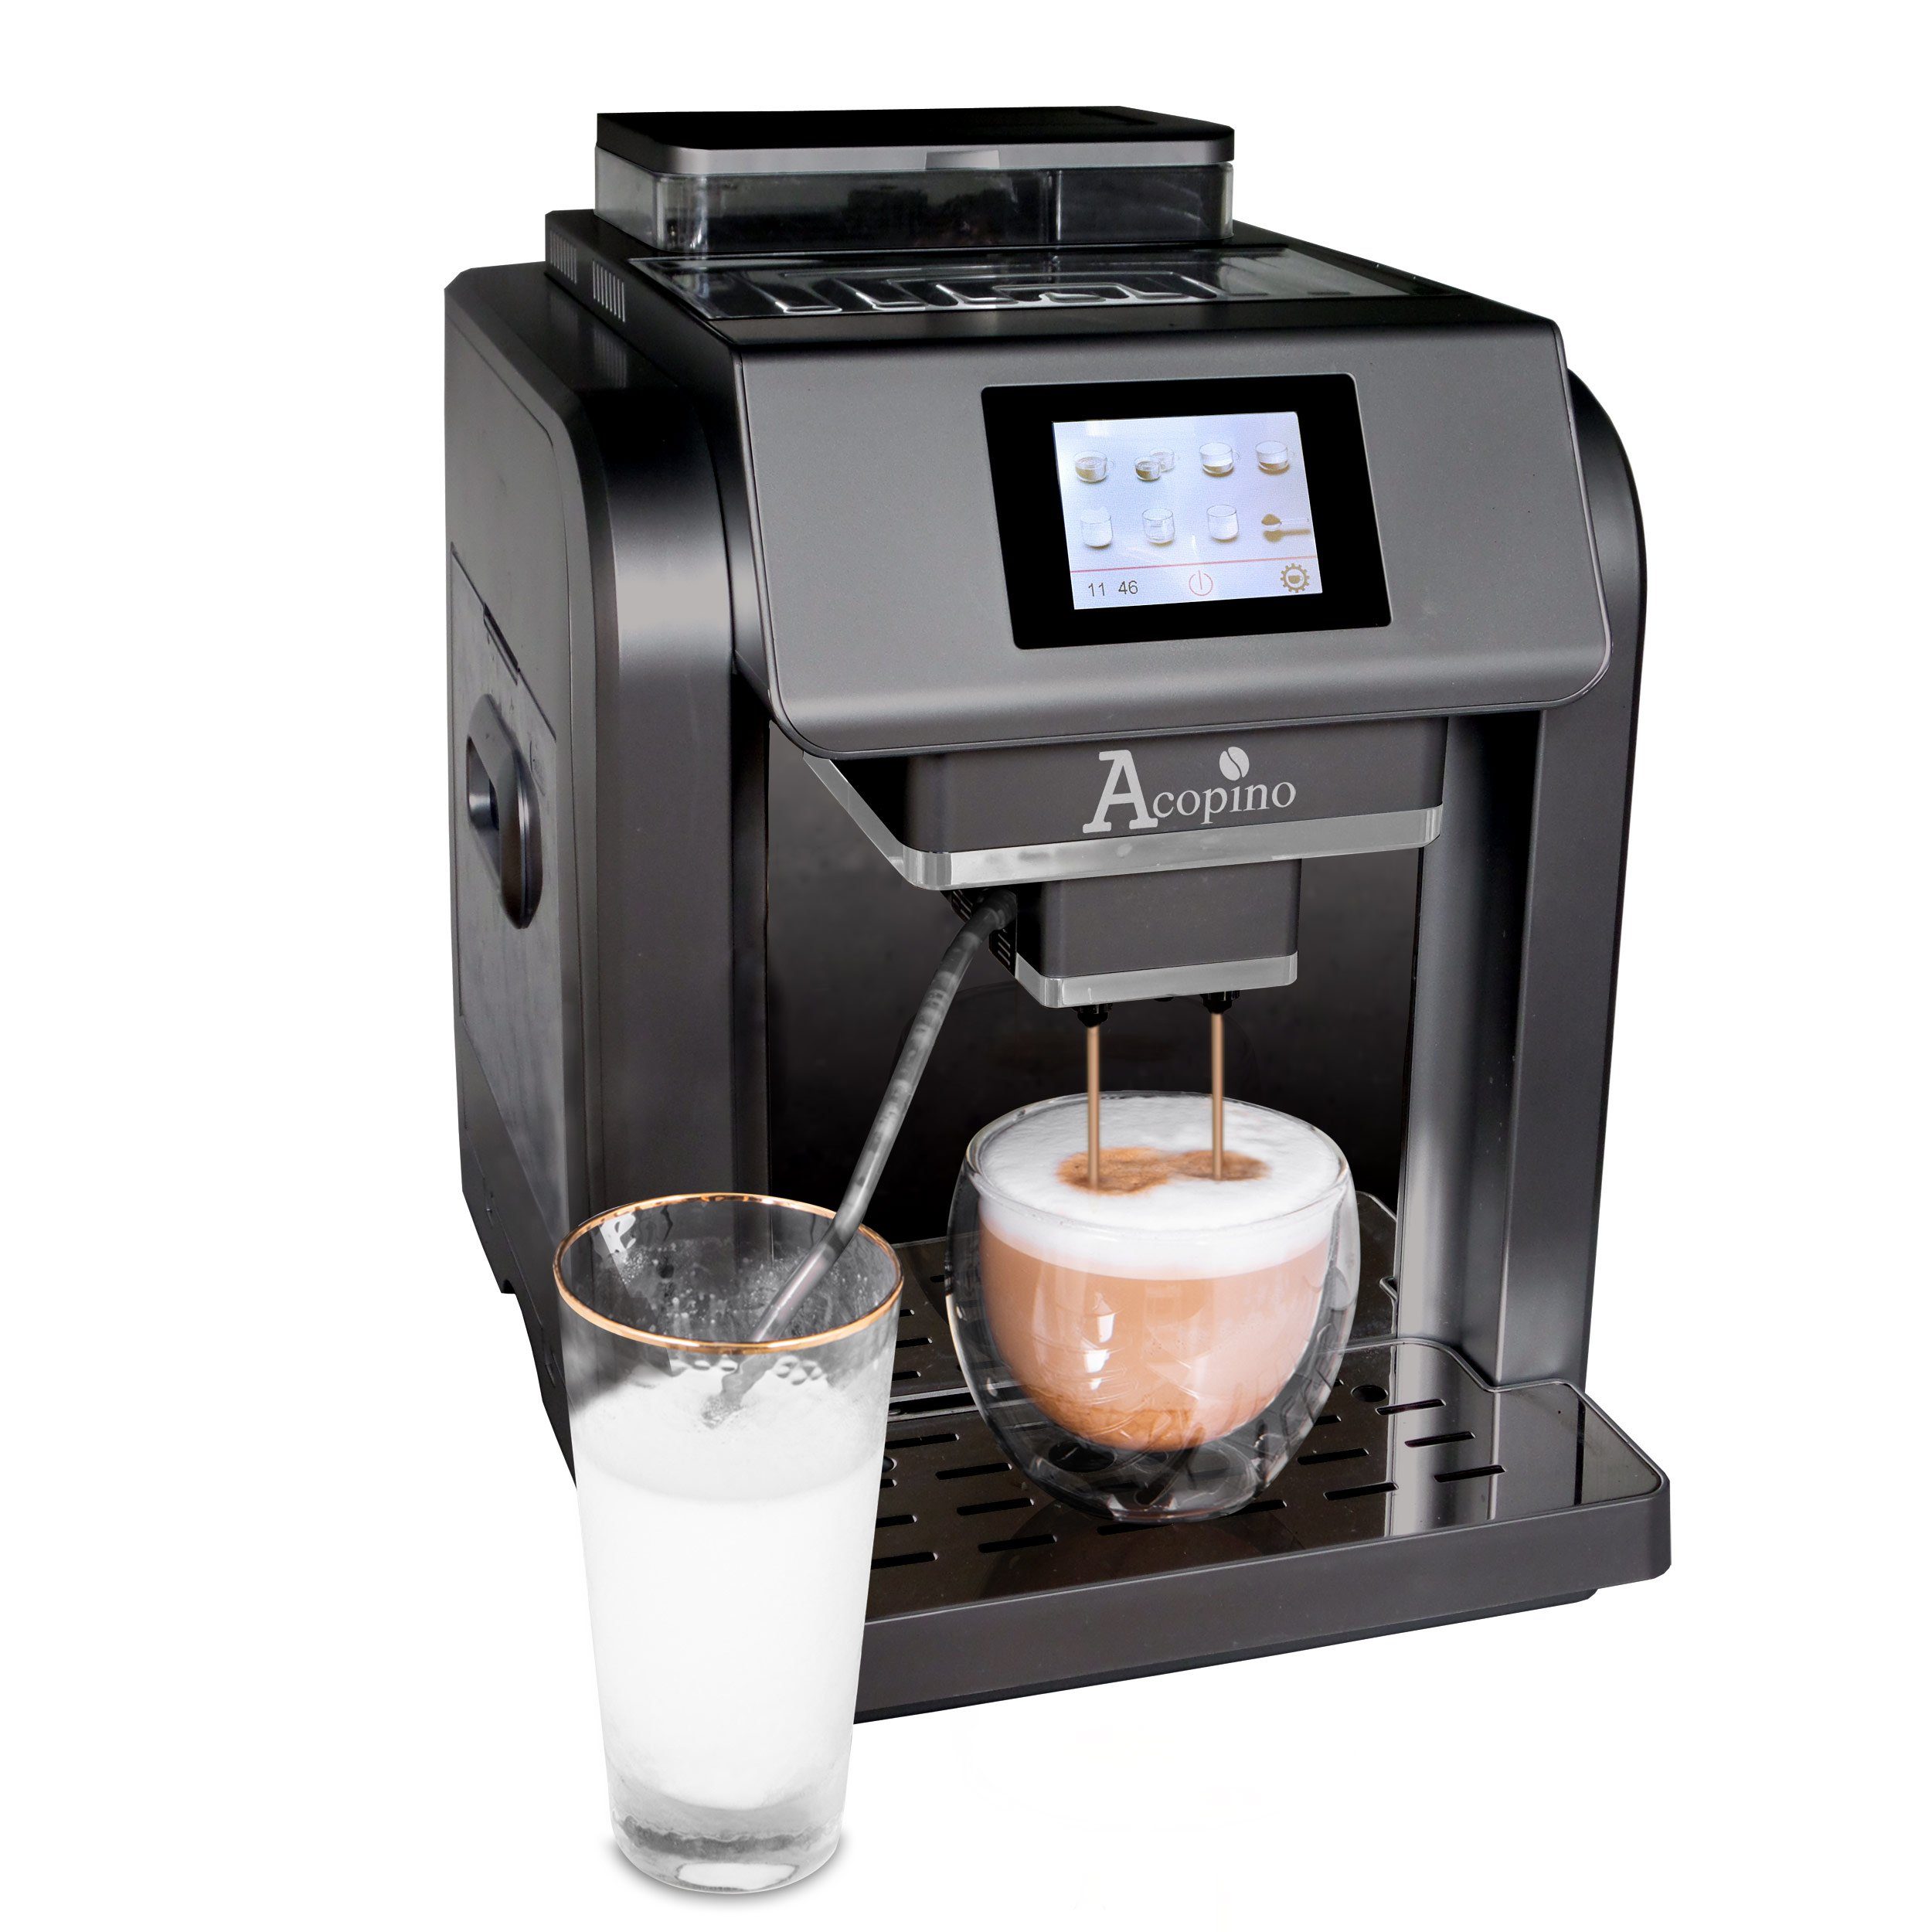 Monza One Touch, Kaffeeherstellung durch Acopino Kaffeevollautomat einfache Anthrazit Besonders One-Touch-Bedienung